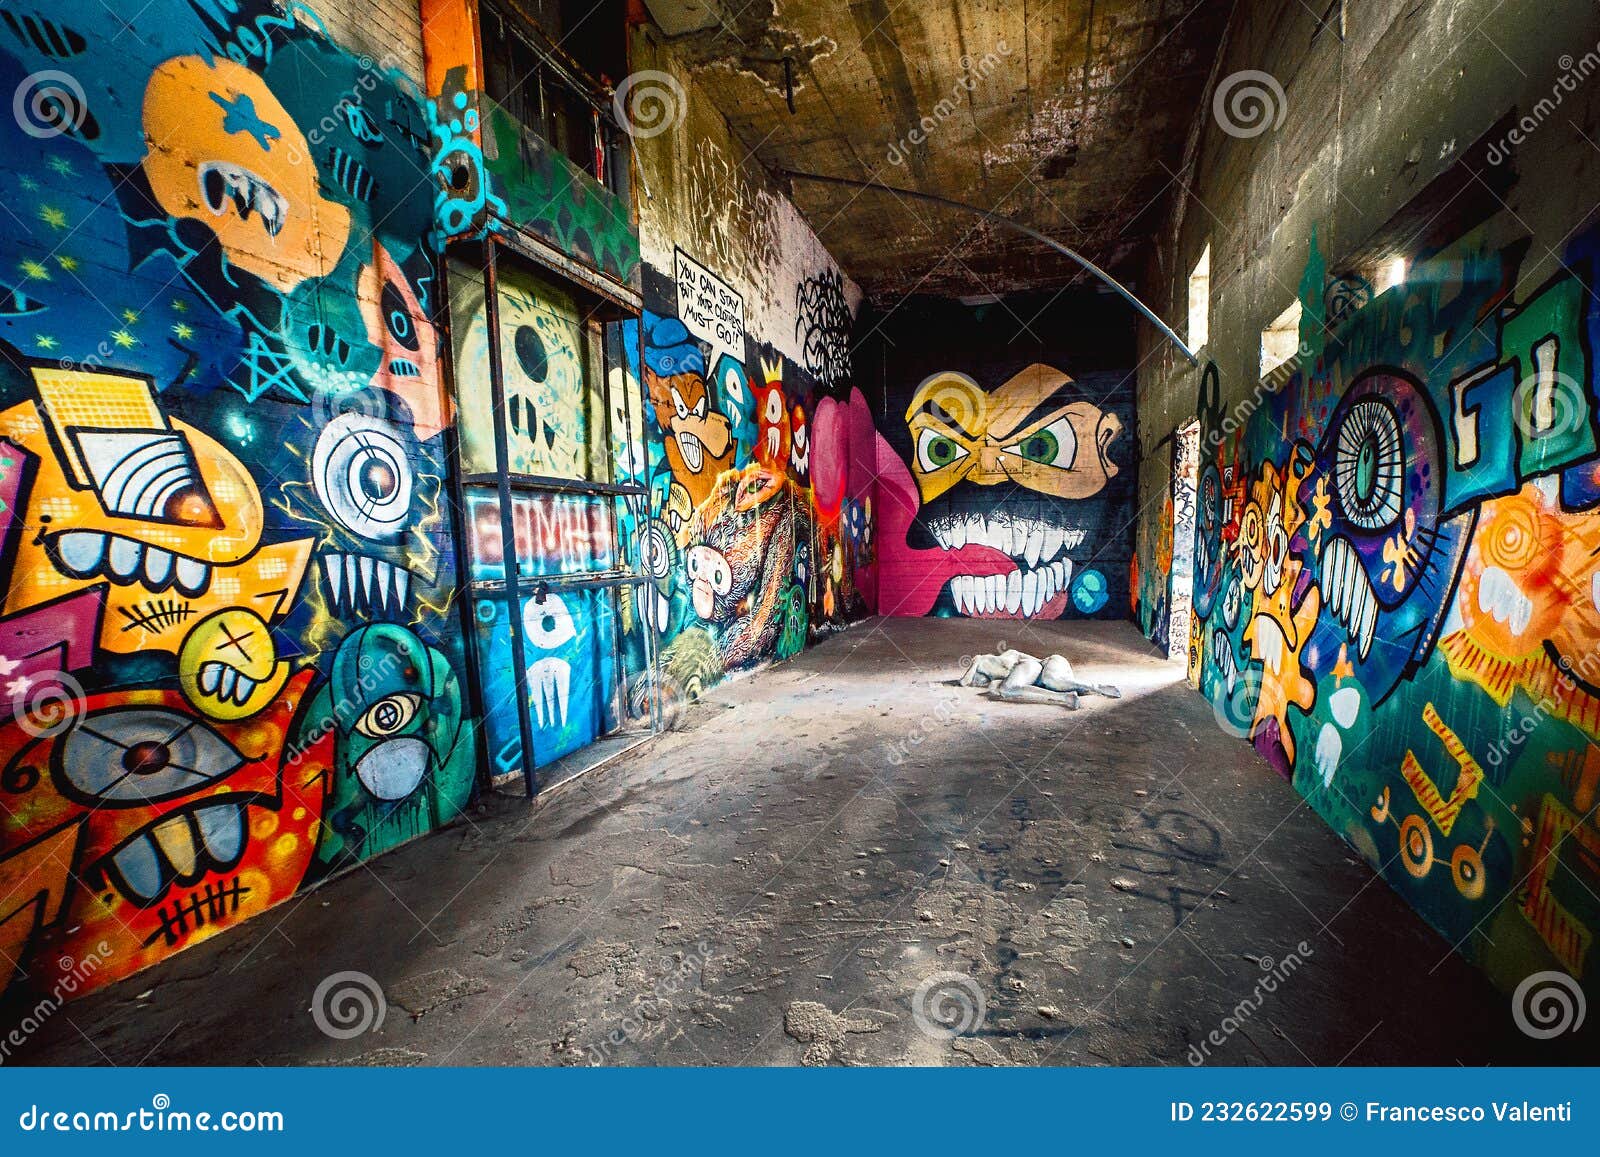 Murale graffiti pour chambre d'ados – L'actualité sociale et communautaire.  Prostitution, Drogue, alcool, gang de rue, gambling